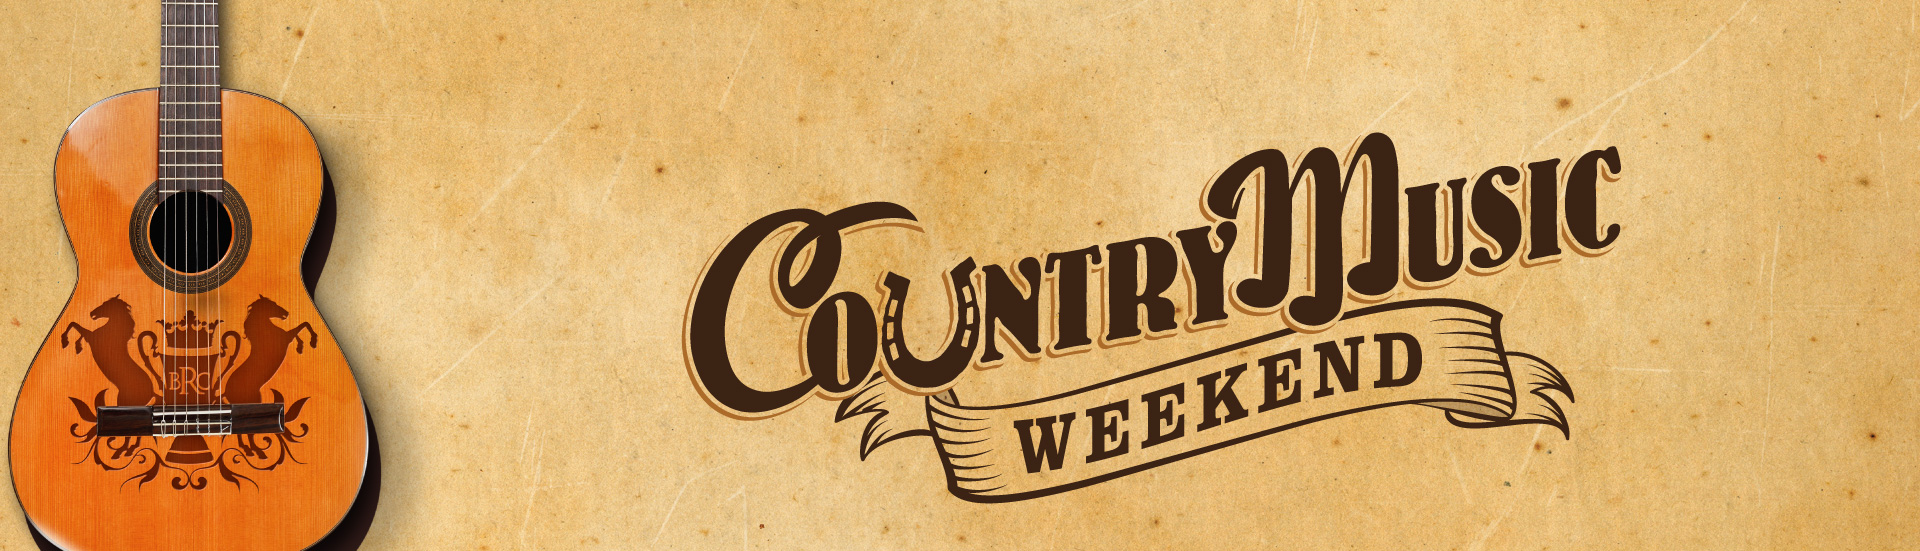 Country Music Weekend | Brisbane Racing Club 